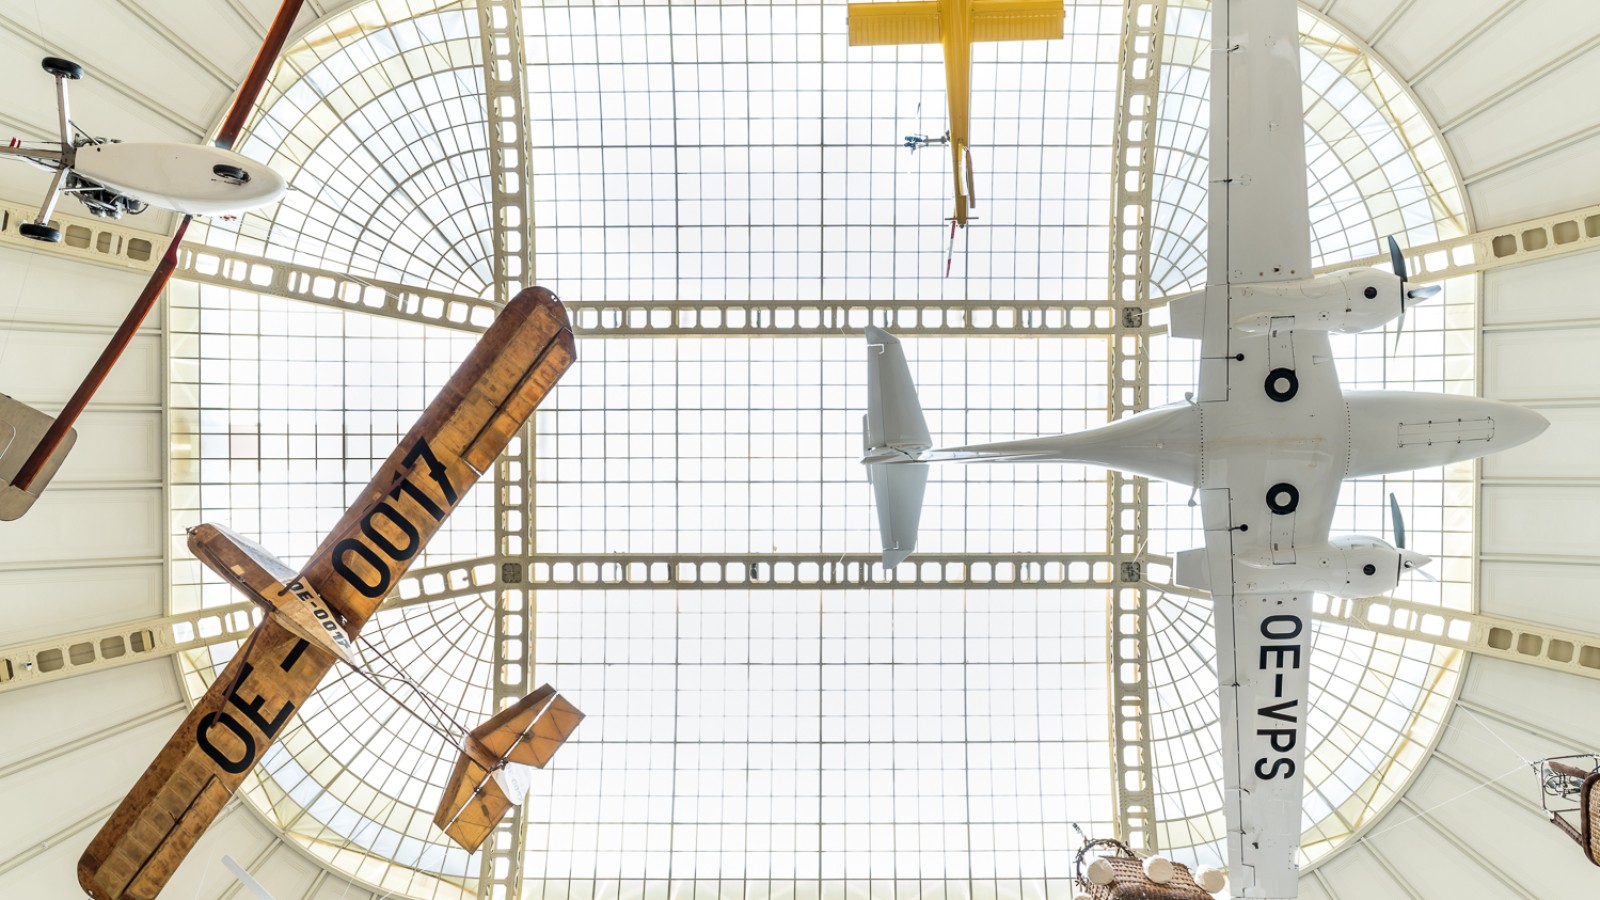 : Flugzeuge, die unter dem Dach des Museums hängen, Teil der Ausstellung "Mobilität"